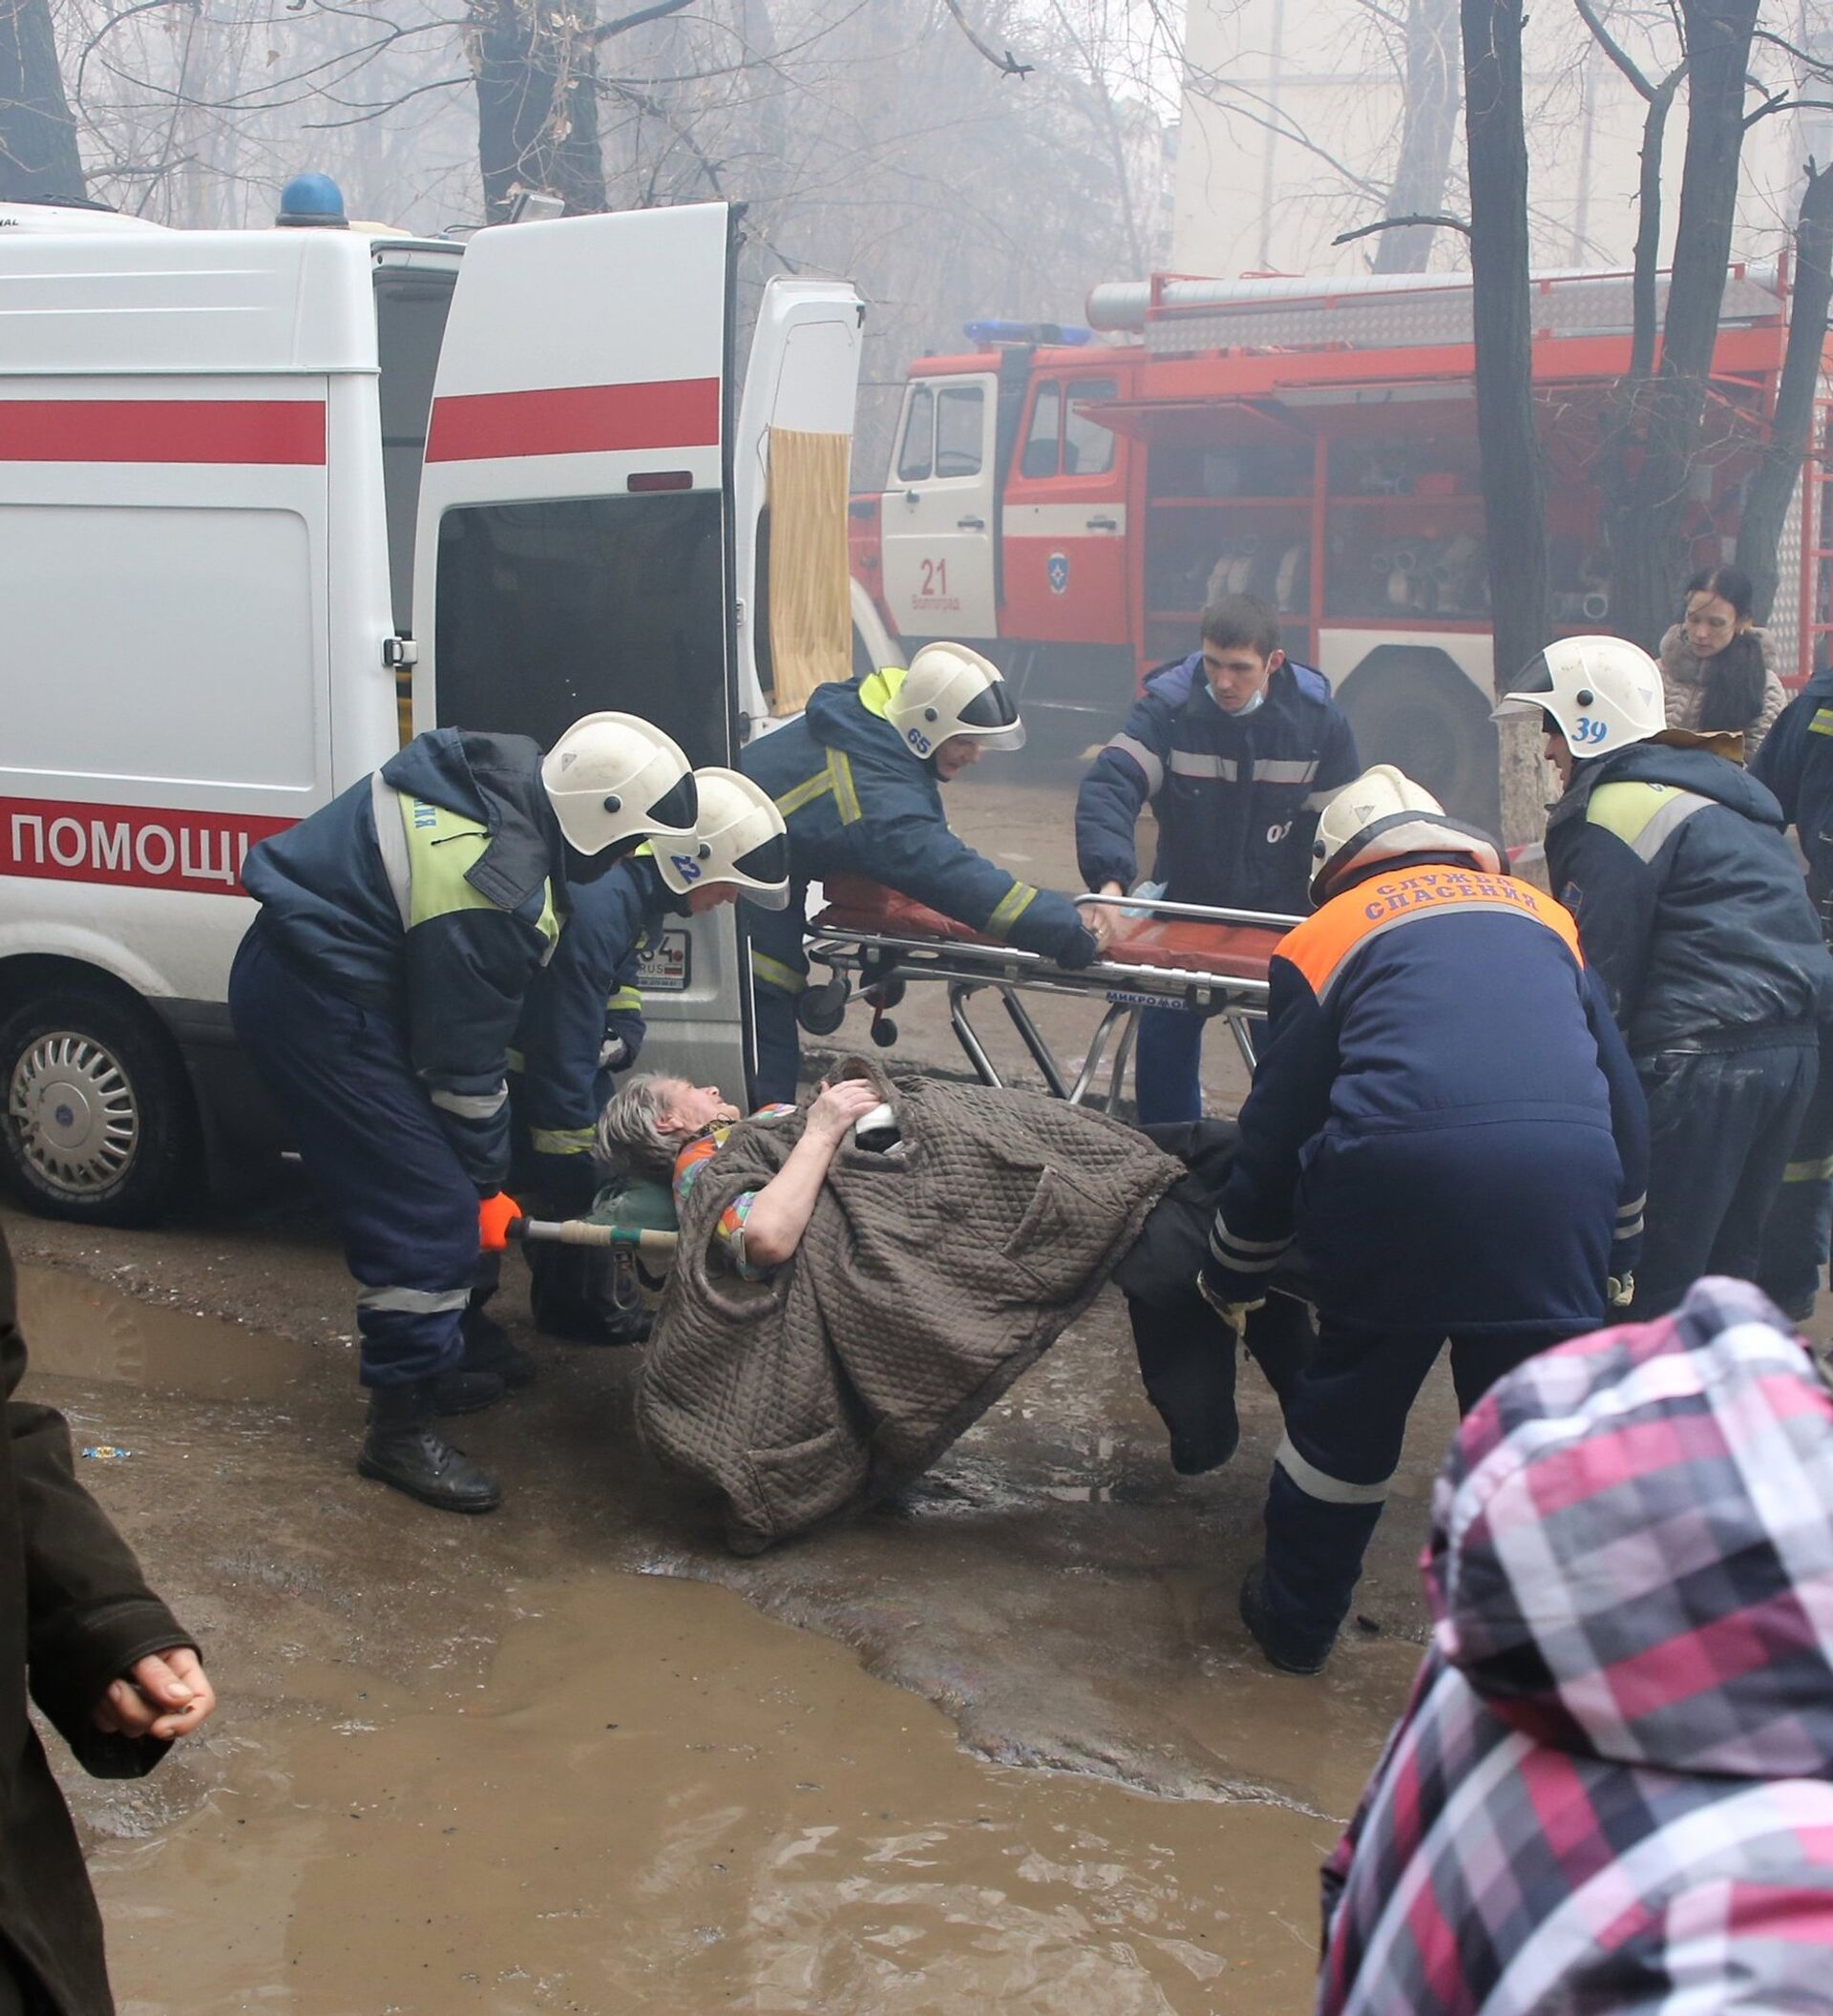 Эвакуация после взрыва. Взрыв бытового газа в Волгограде. Эвакуация после взрыва в доме. Оцепление территории места теракта. Взрыв бытового газа в жилом доме.